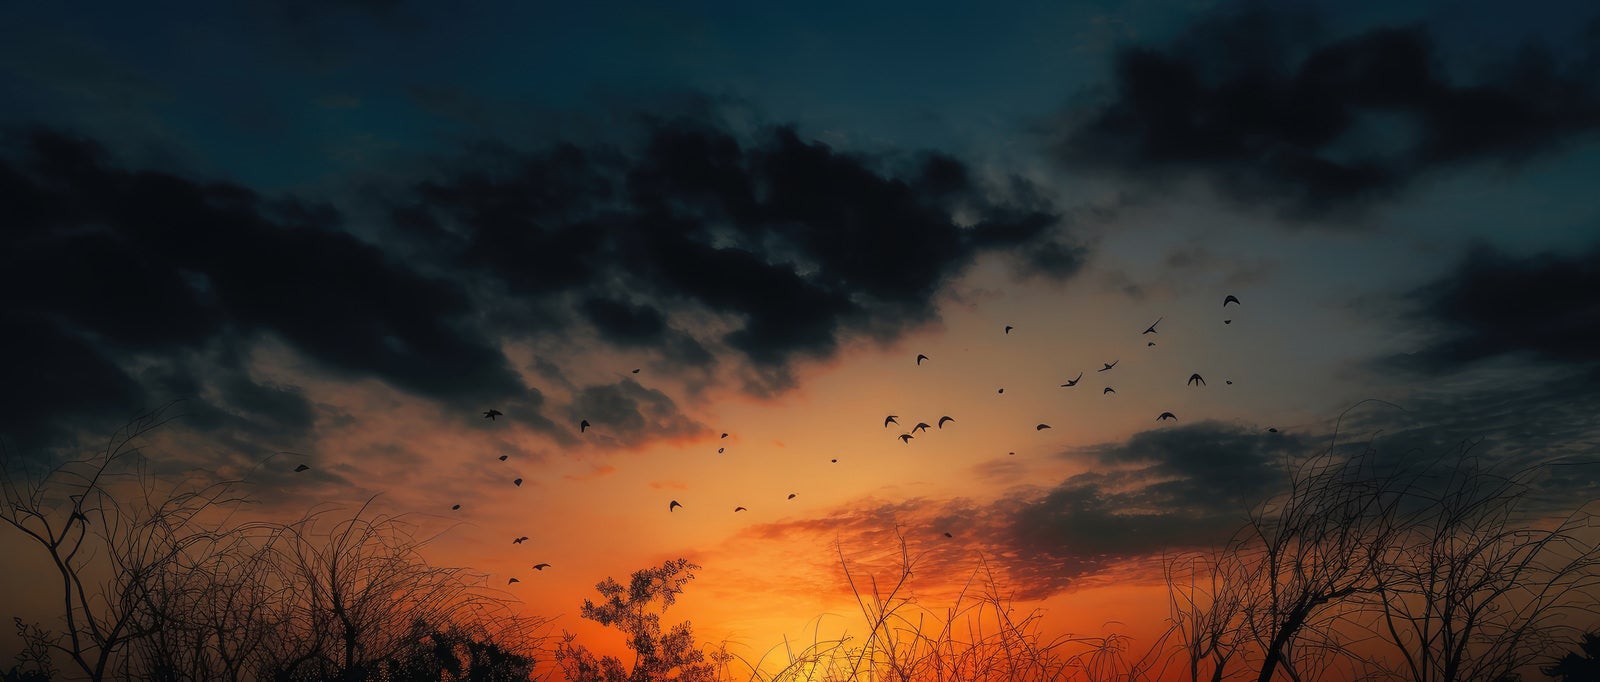 「夕焼け空に飛び立つ鳥たち」の写真